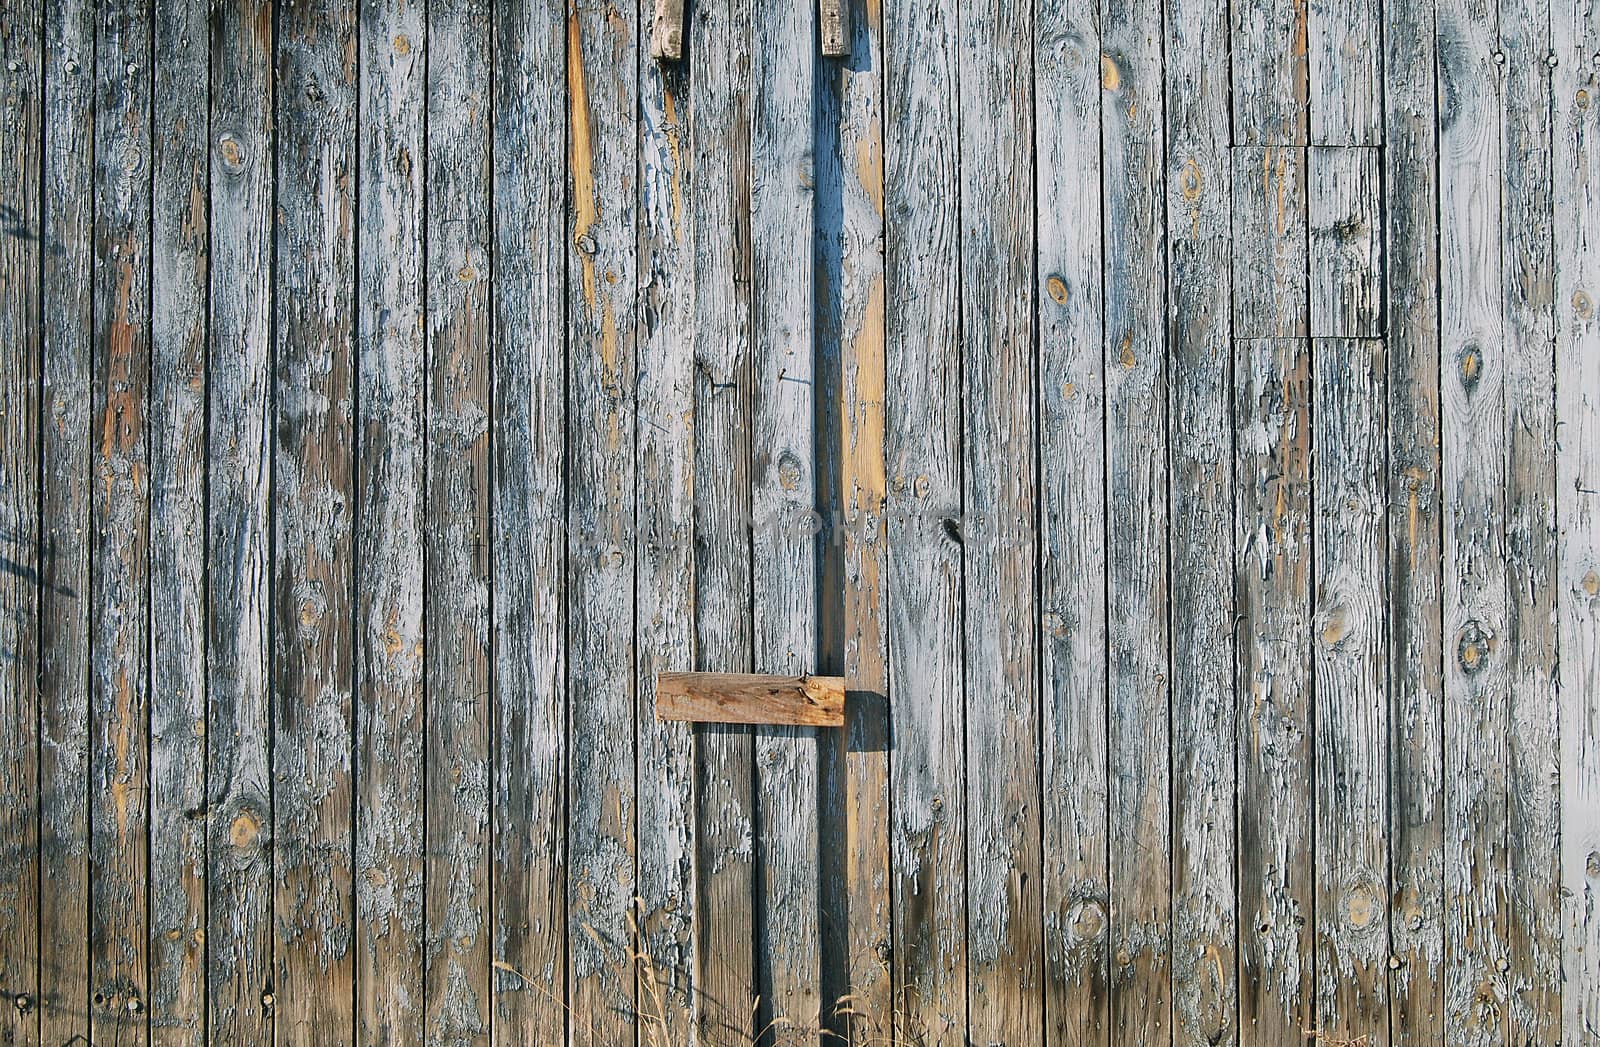 Old faded blue wooden garden fence door